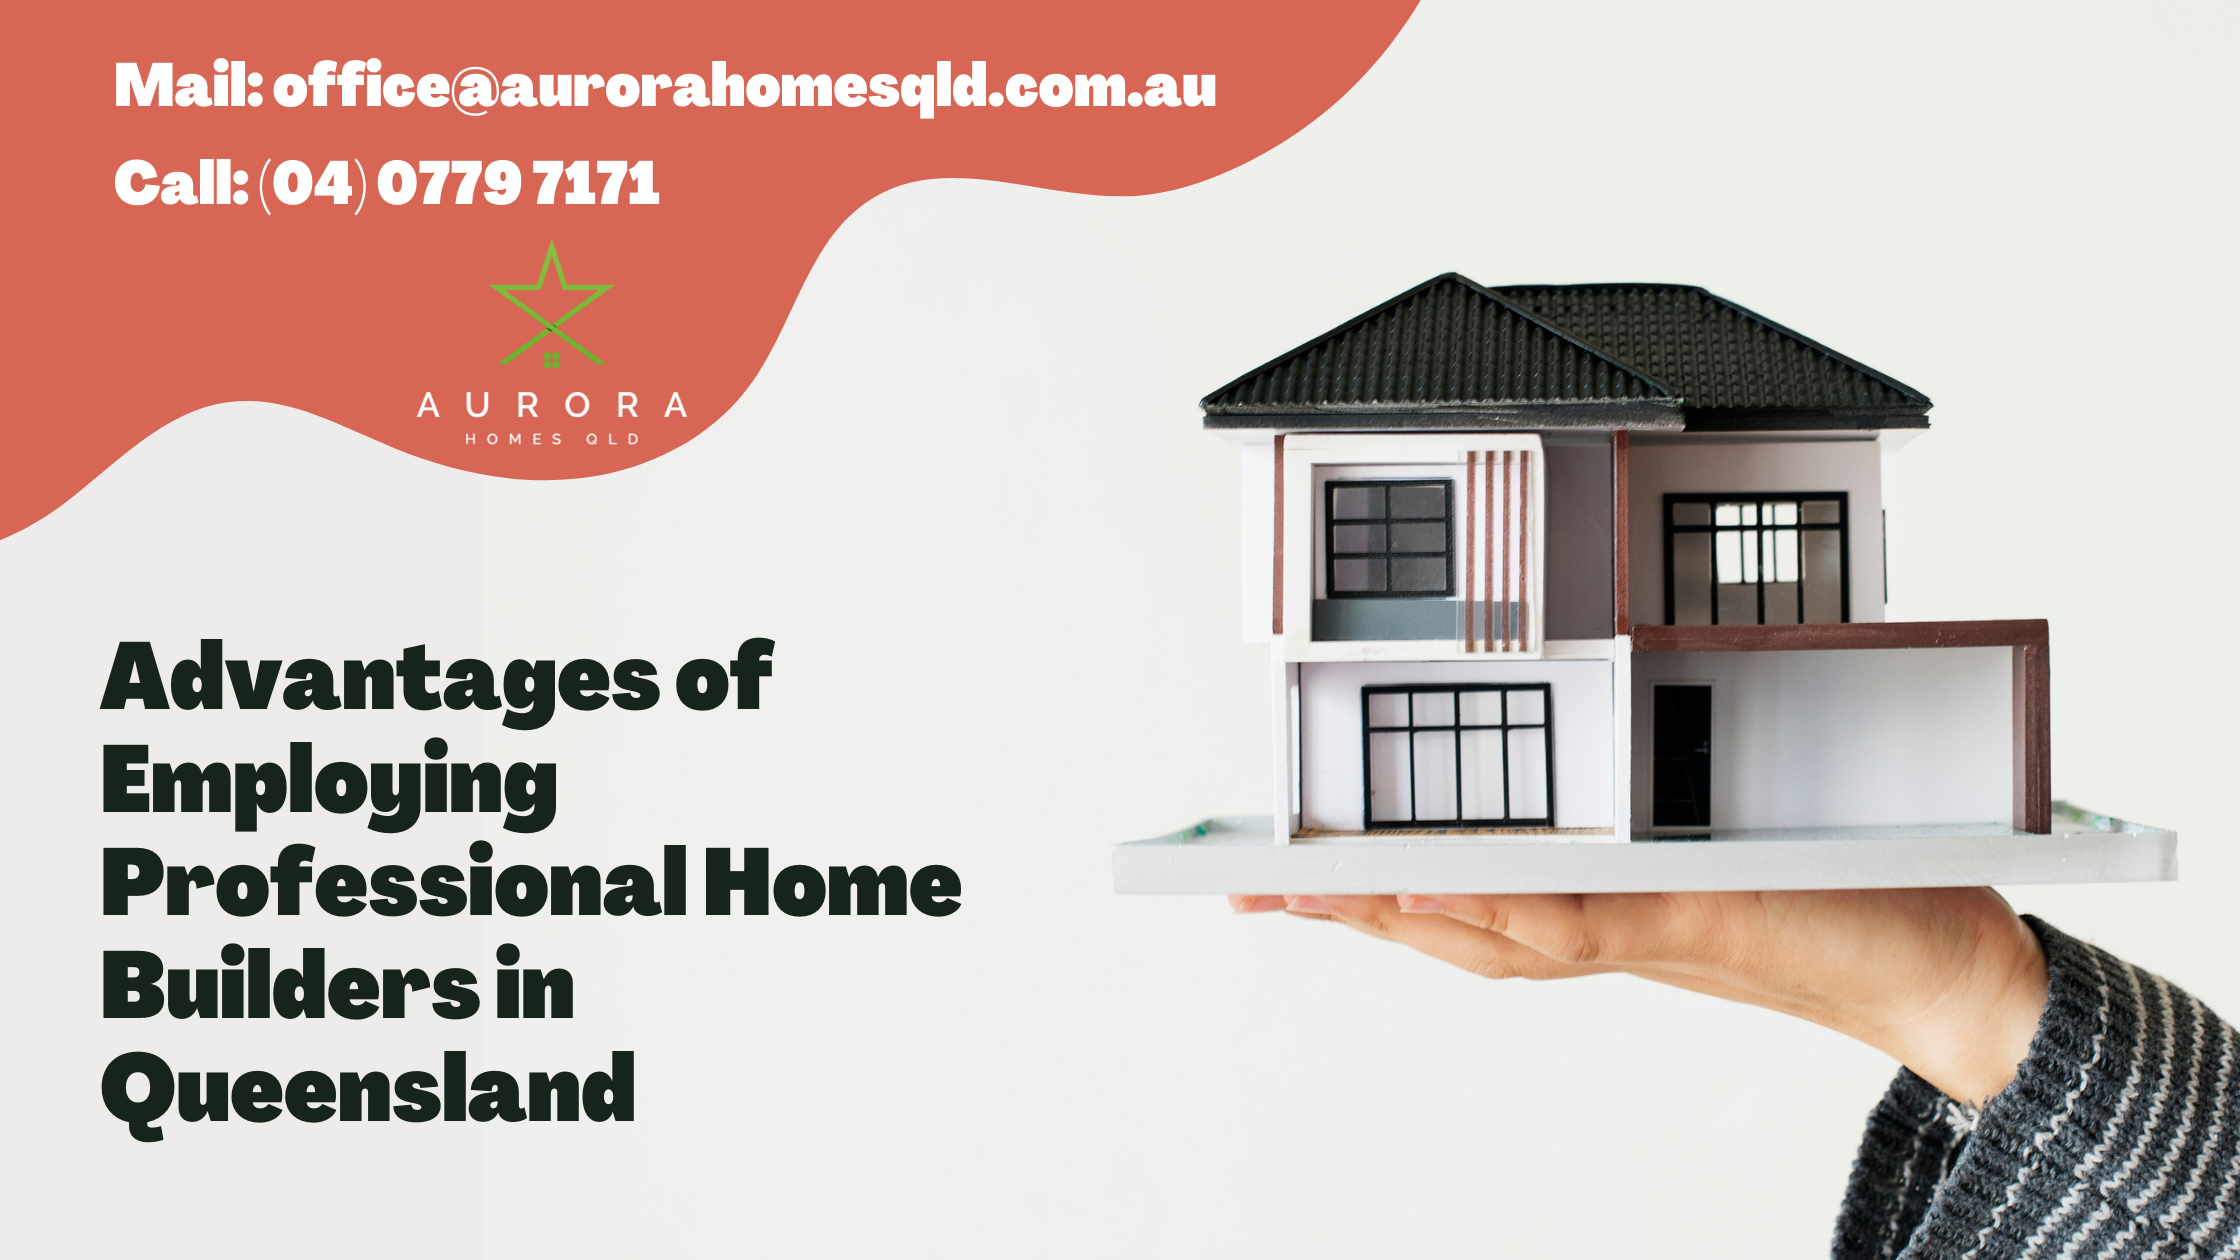 5 Benefits Of Hiring Professional Home Builders in Queensland